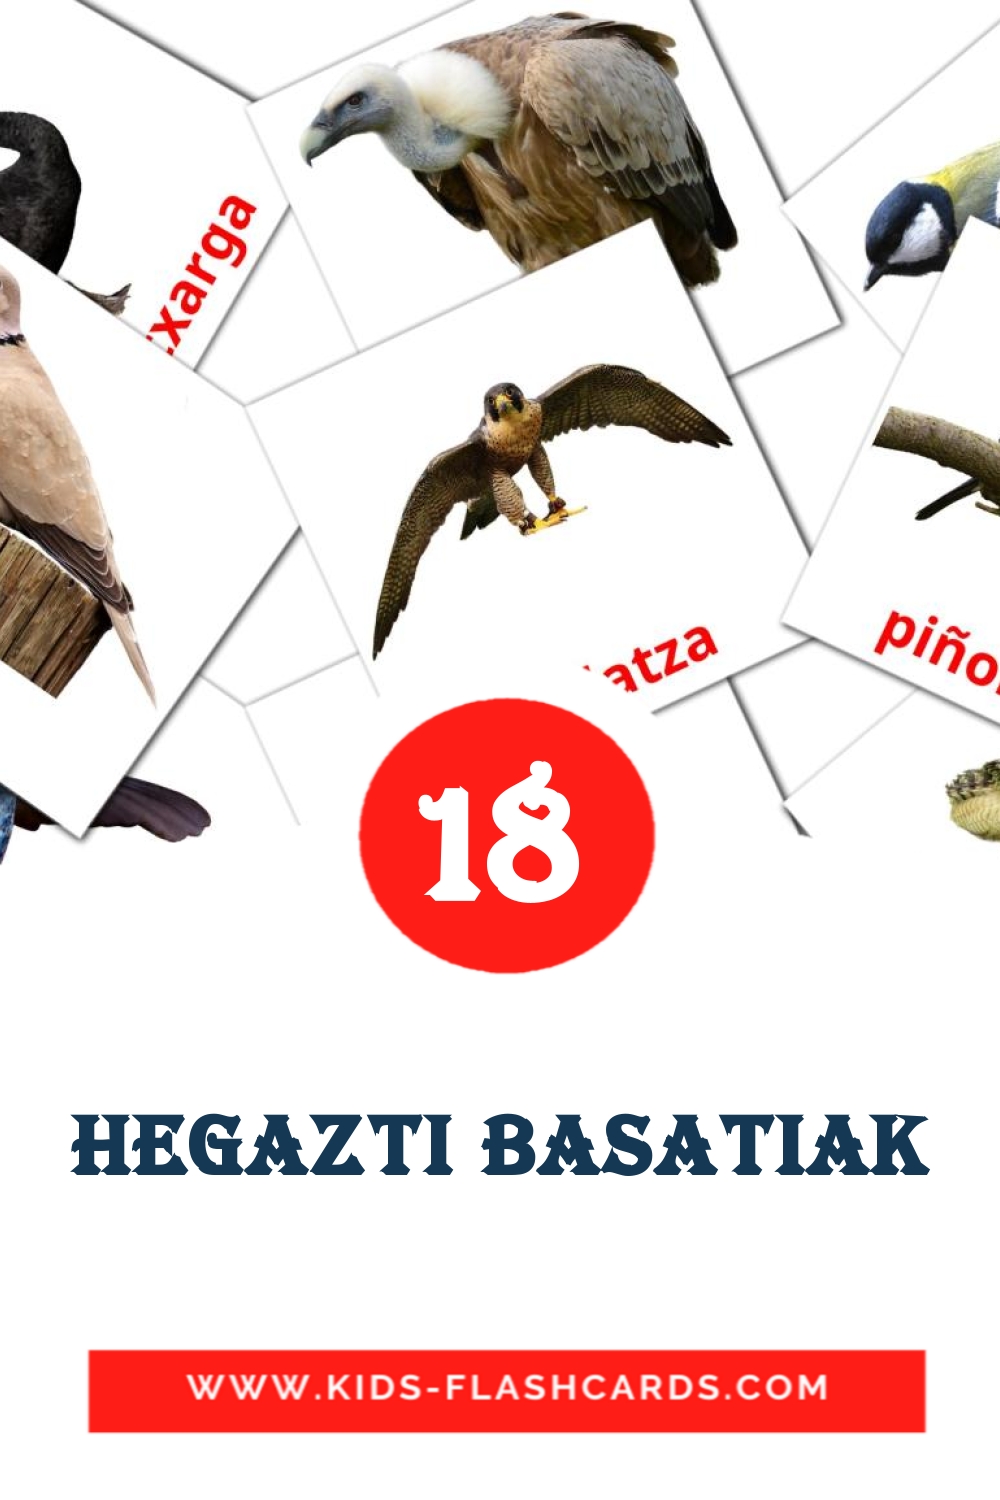 18 Hegazti basatiak Bildkarten für den Kindergarten auf Baskische